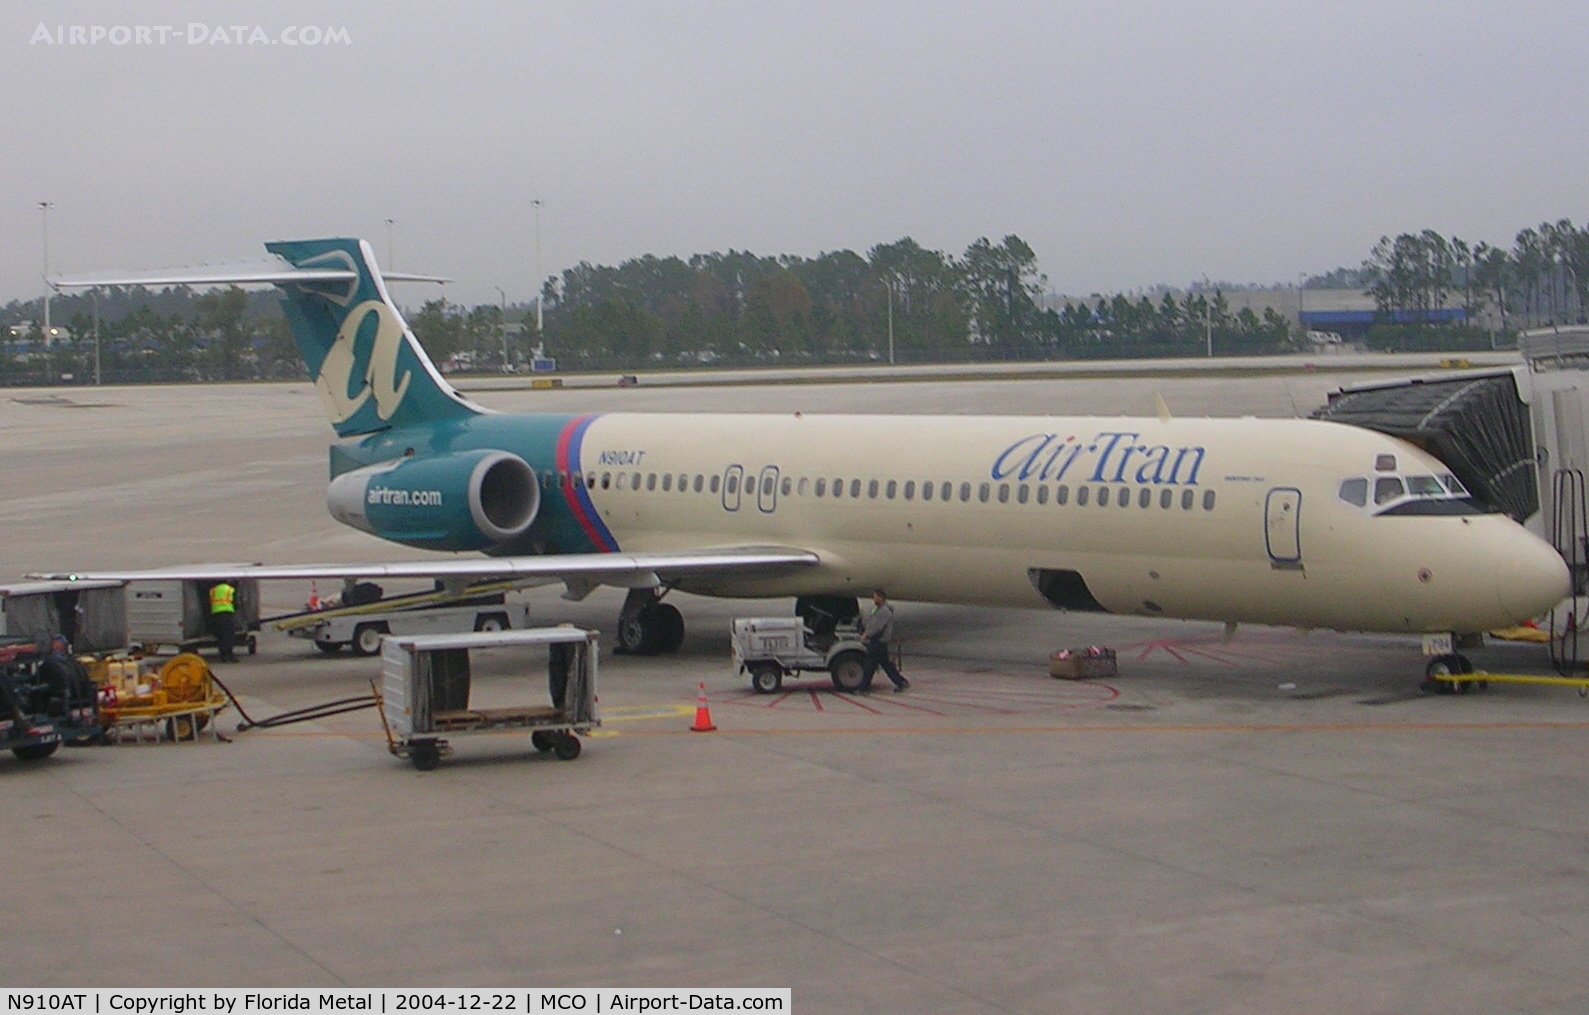 N910AT, 2001 Boeing 717-200 C/N 55086, Air Tran 717